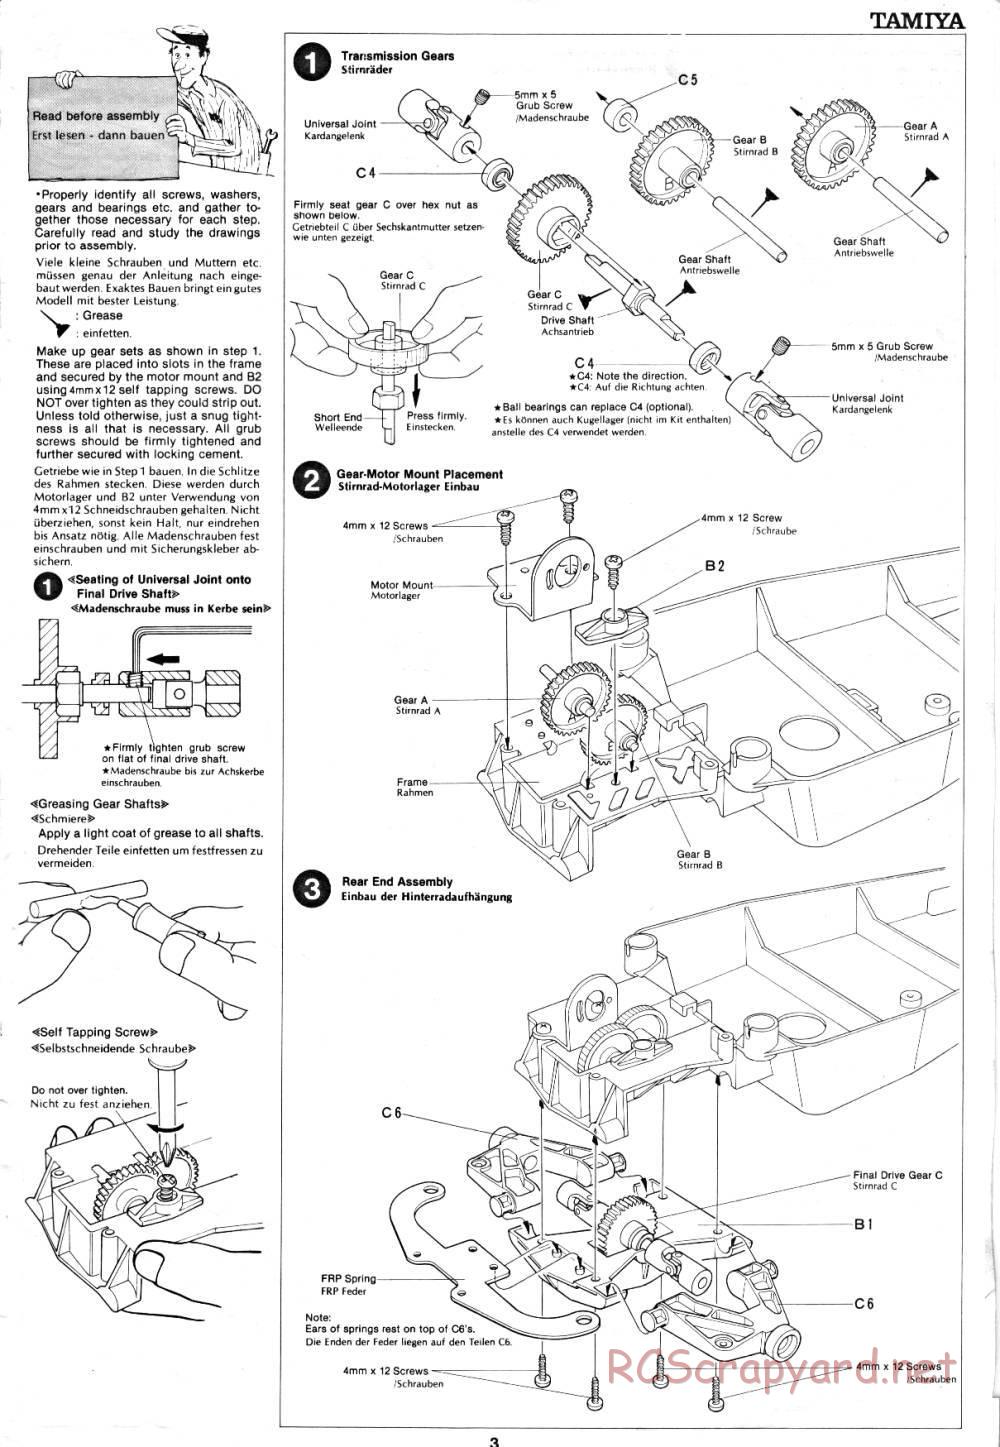 Tamiya - Holiday Buggy - 58023 - Manual - Page 3